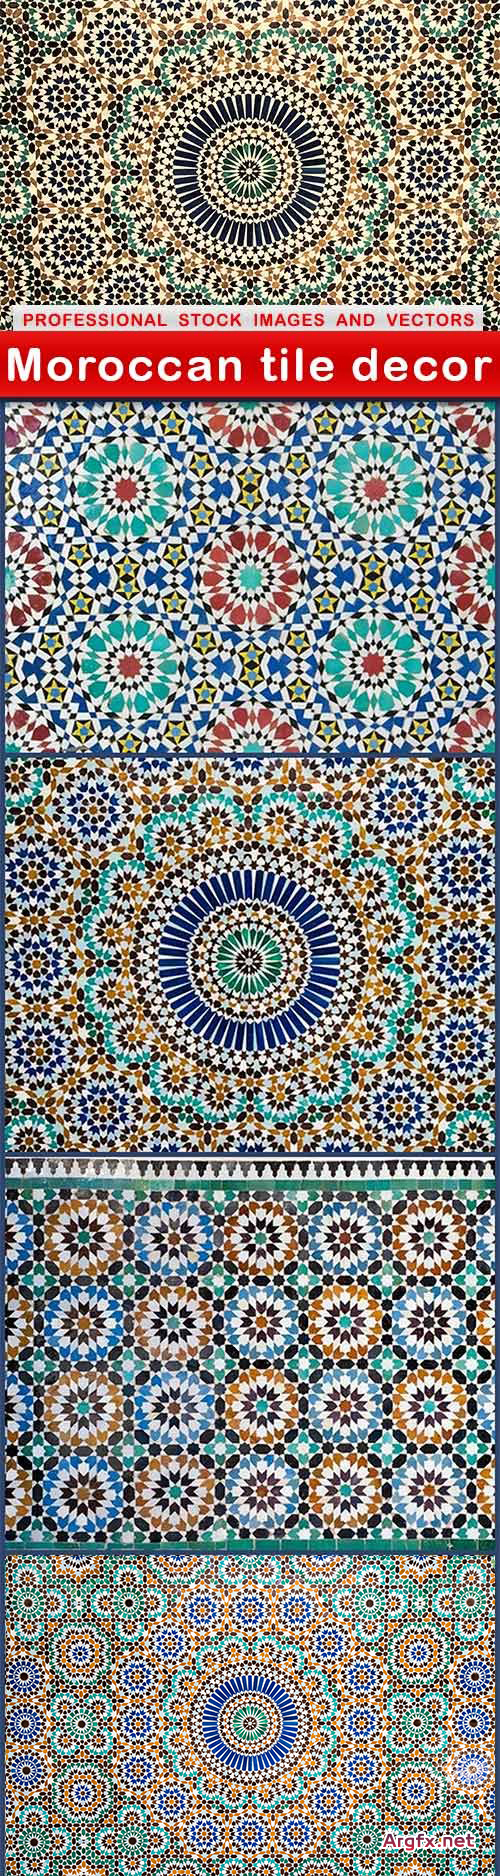 Moroccan tile decor - 5 UHQ JPEG